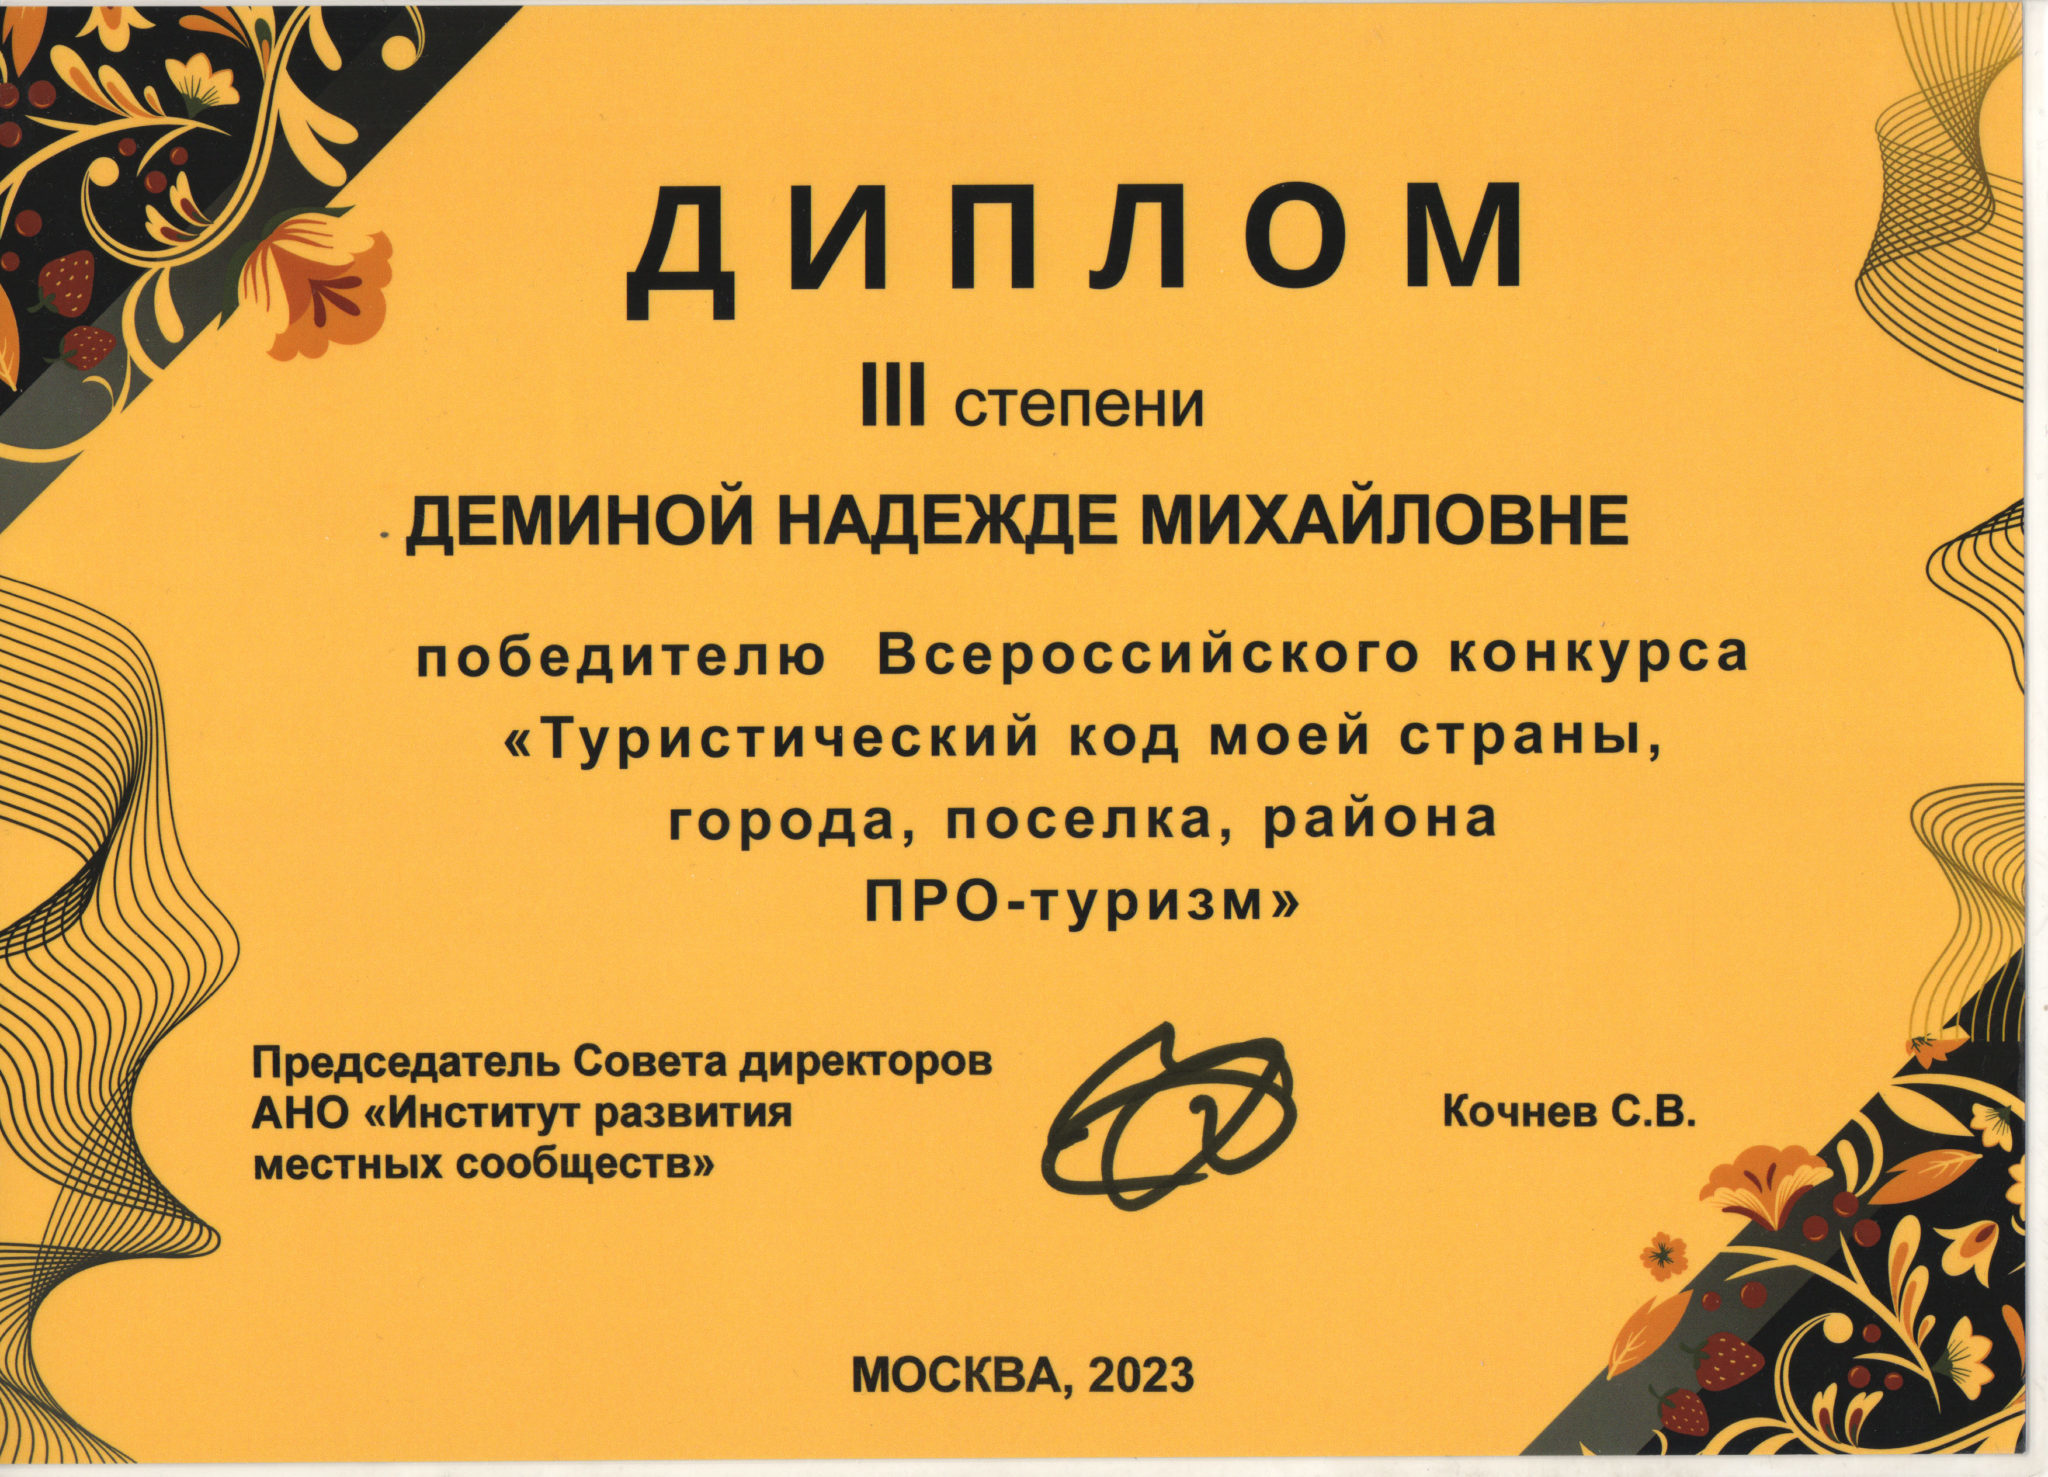 Всероссийский конкурс туристический код моей страны.